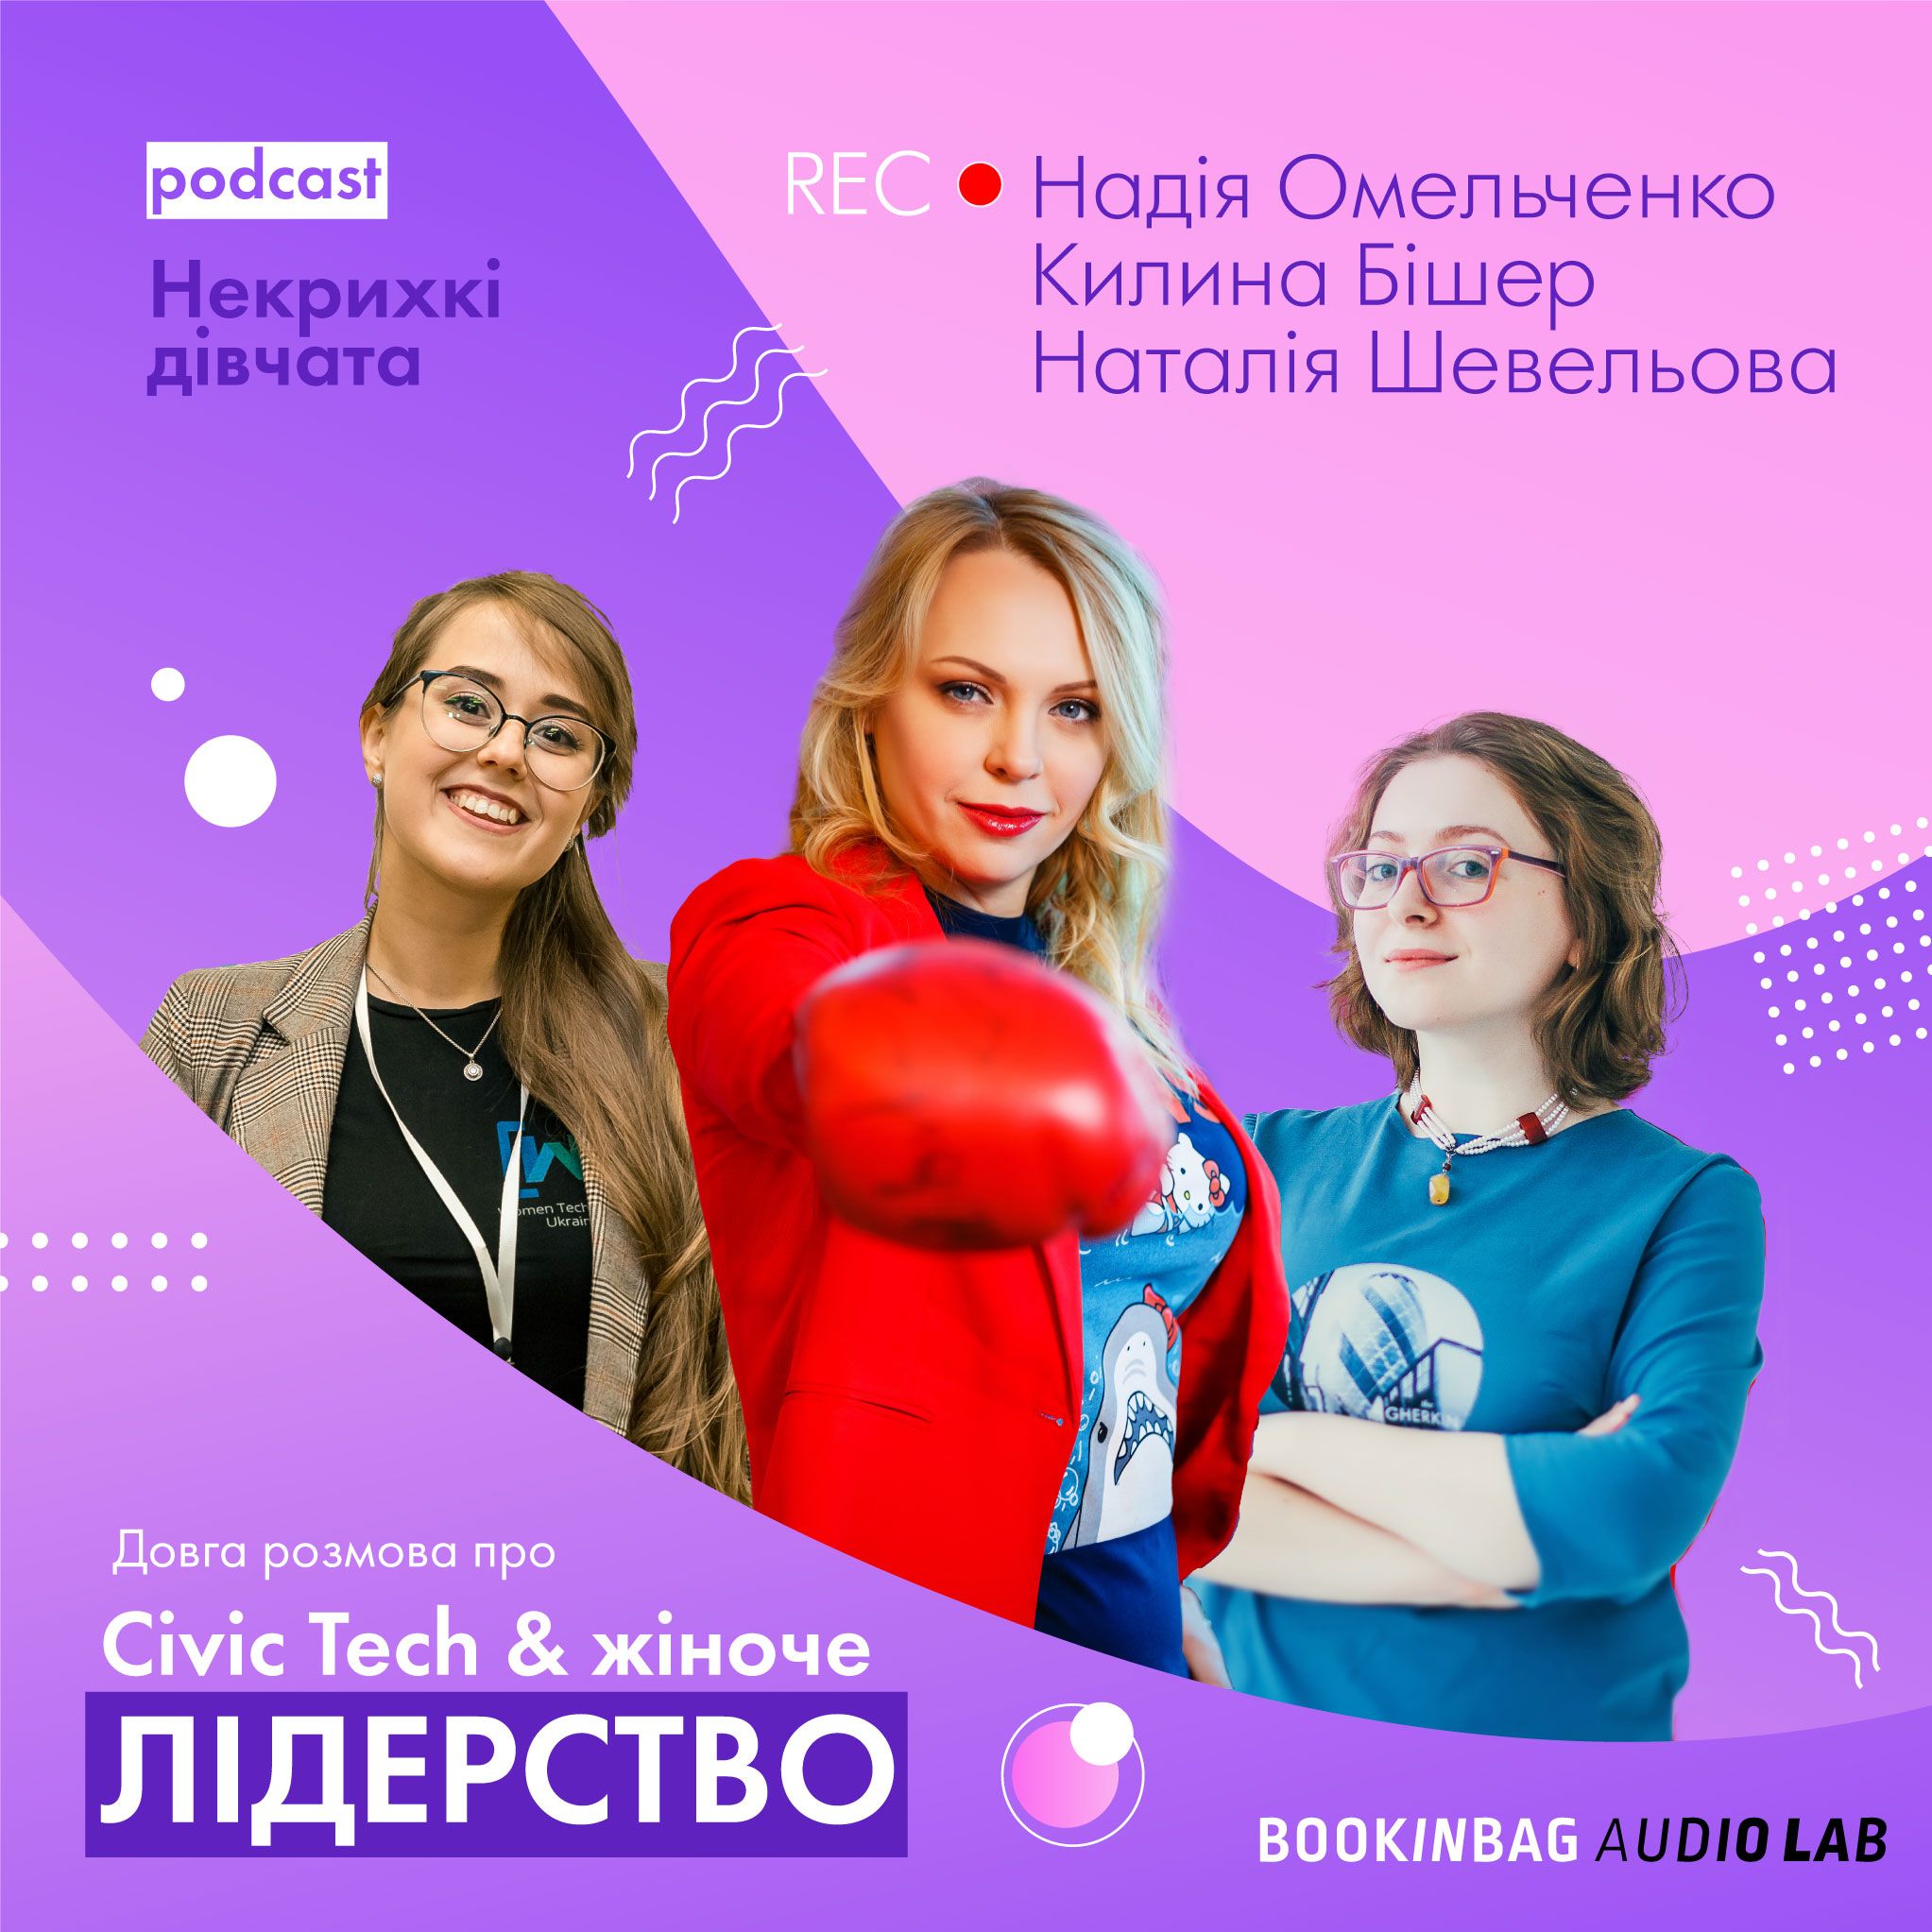 В Україні запустили подкаст про жіноче лідерство в IT «Некрихкі дівчата»